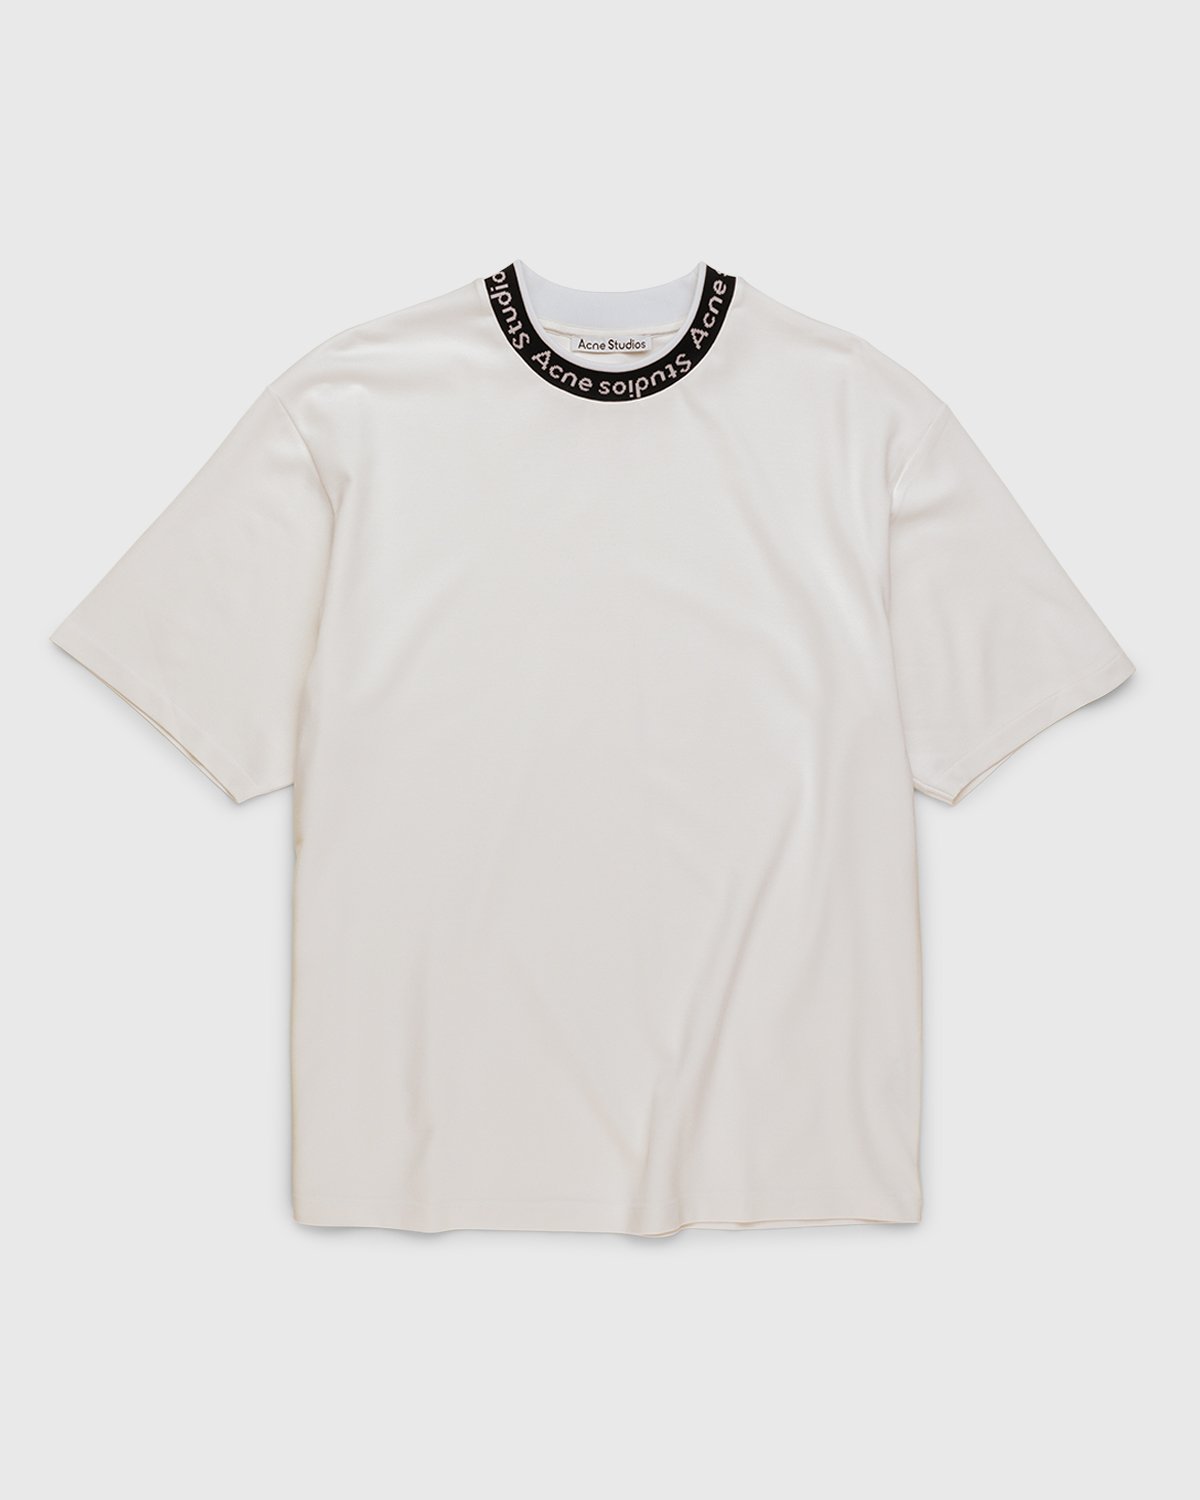 Acne Studios - Logo T-Shirt White - Clothing - White - Image 1